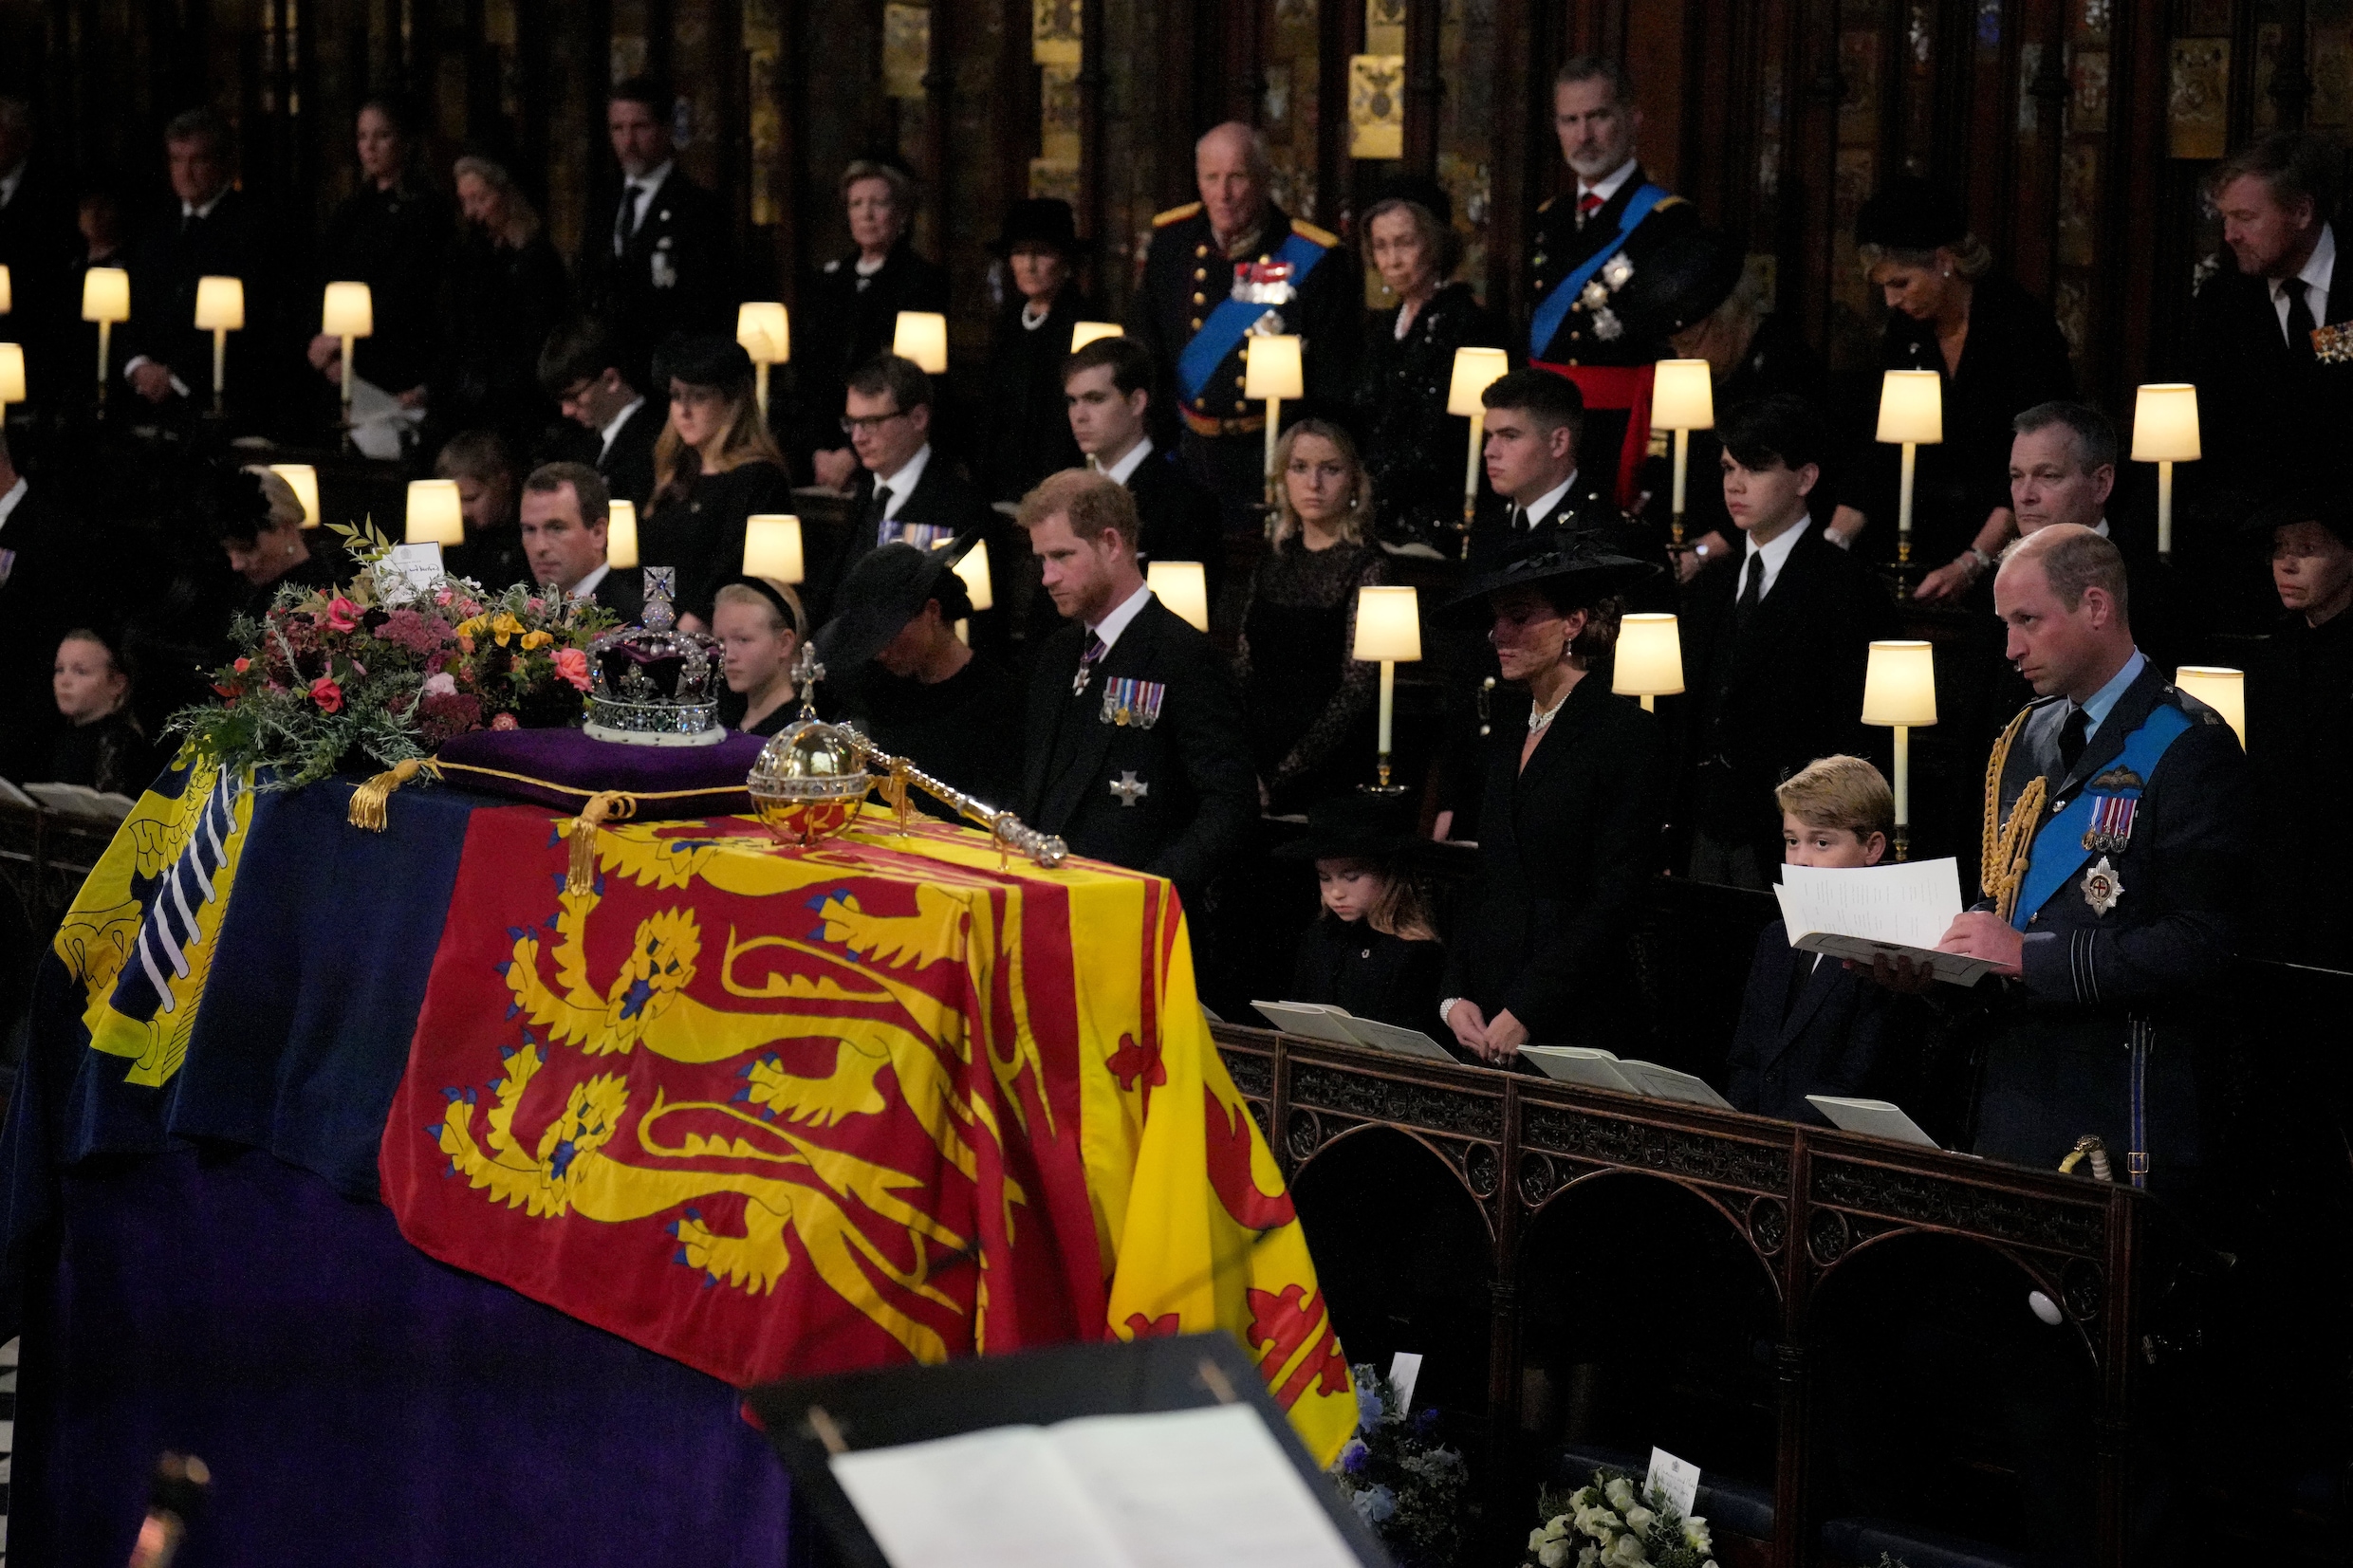 Koninklijke familie brengt Queen Elizabeth naar laatste rustplaats tijdens besloten ceremonie